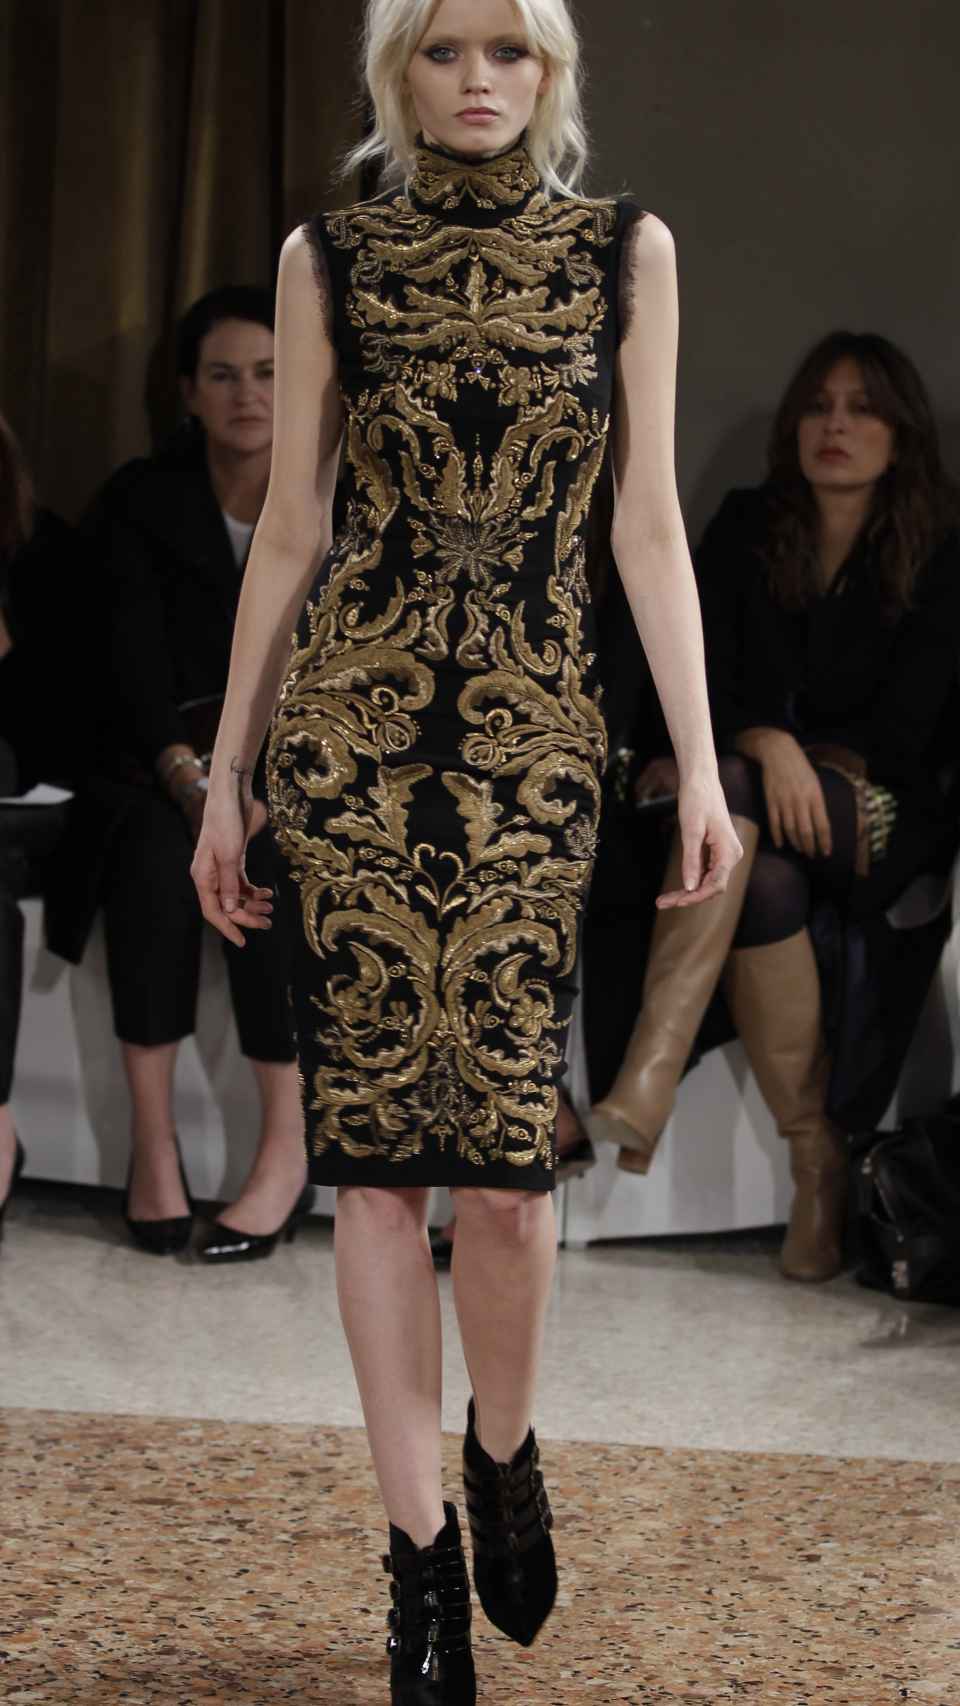 Modelo con vestido de Emilio Pucci en la Semana de la Moda de Milán de 2011.